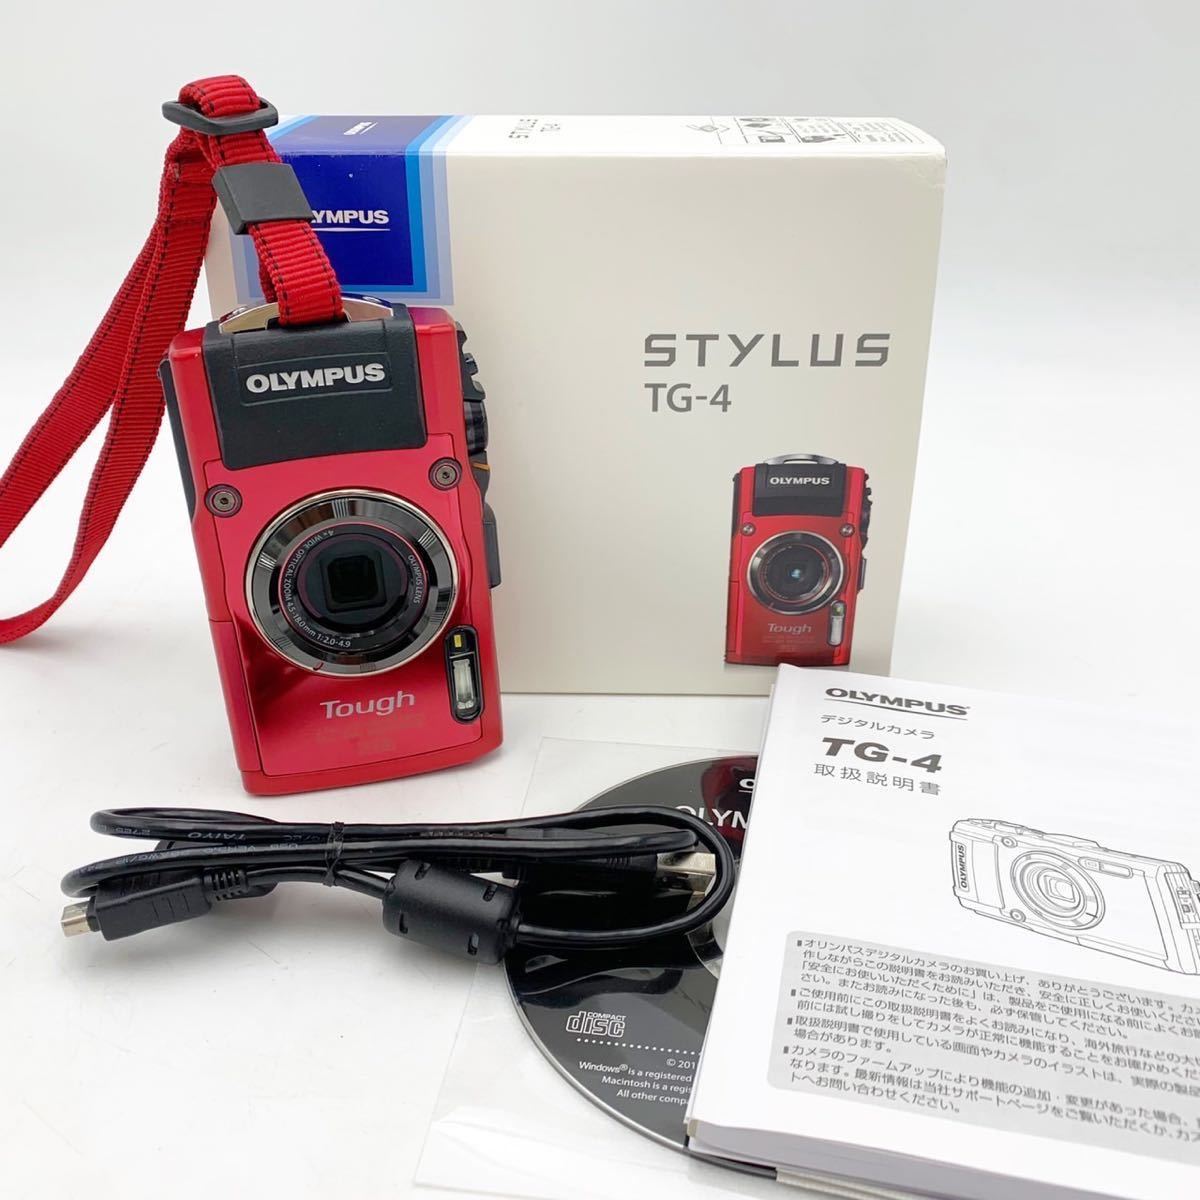 OLYMPUS デジタルカメラ STYLUS TG-4 Tough レッド shimizu-kazumichi.com